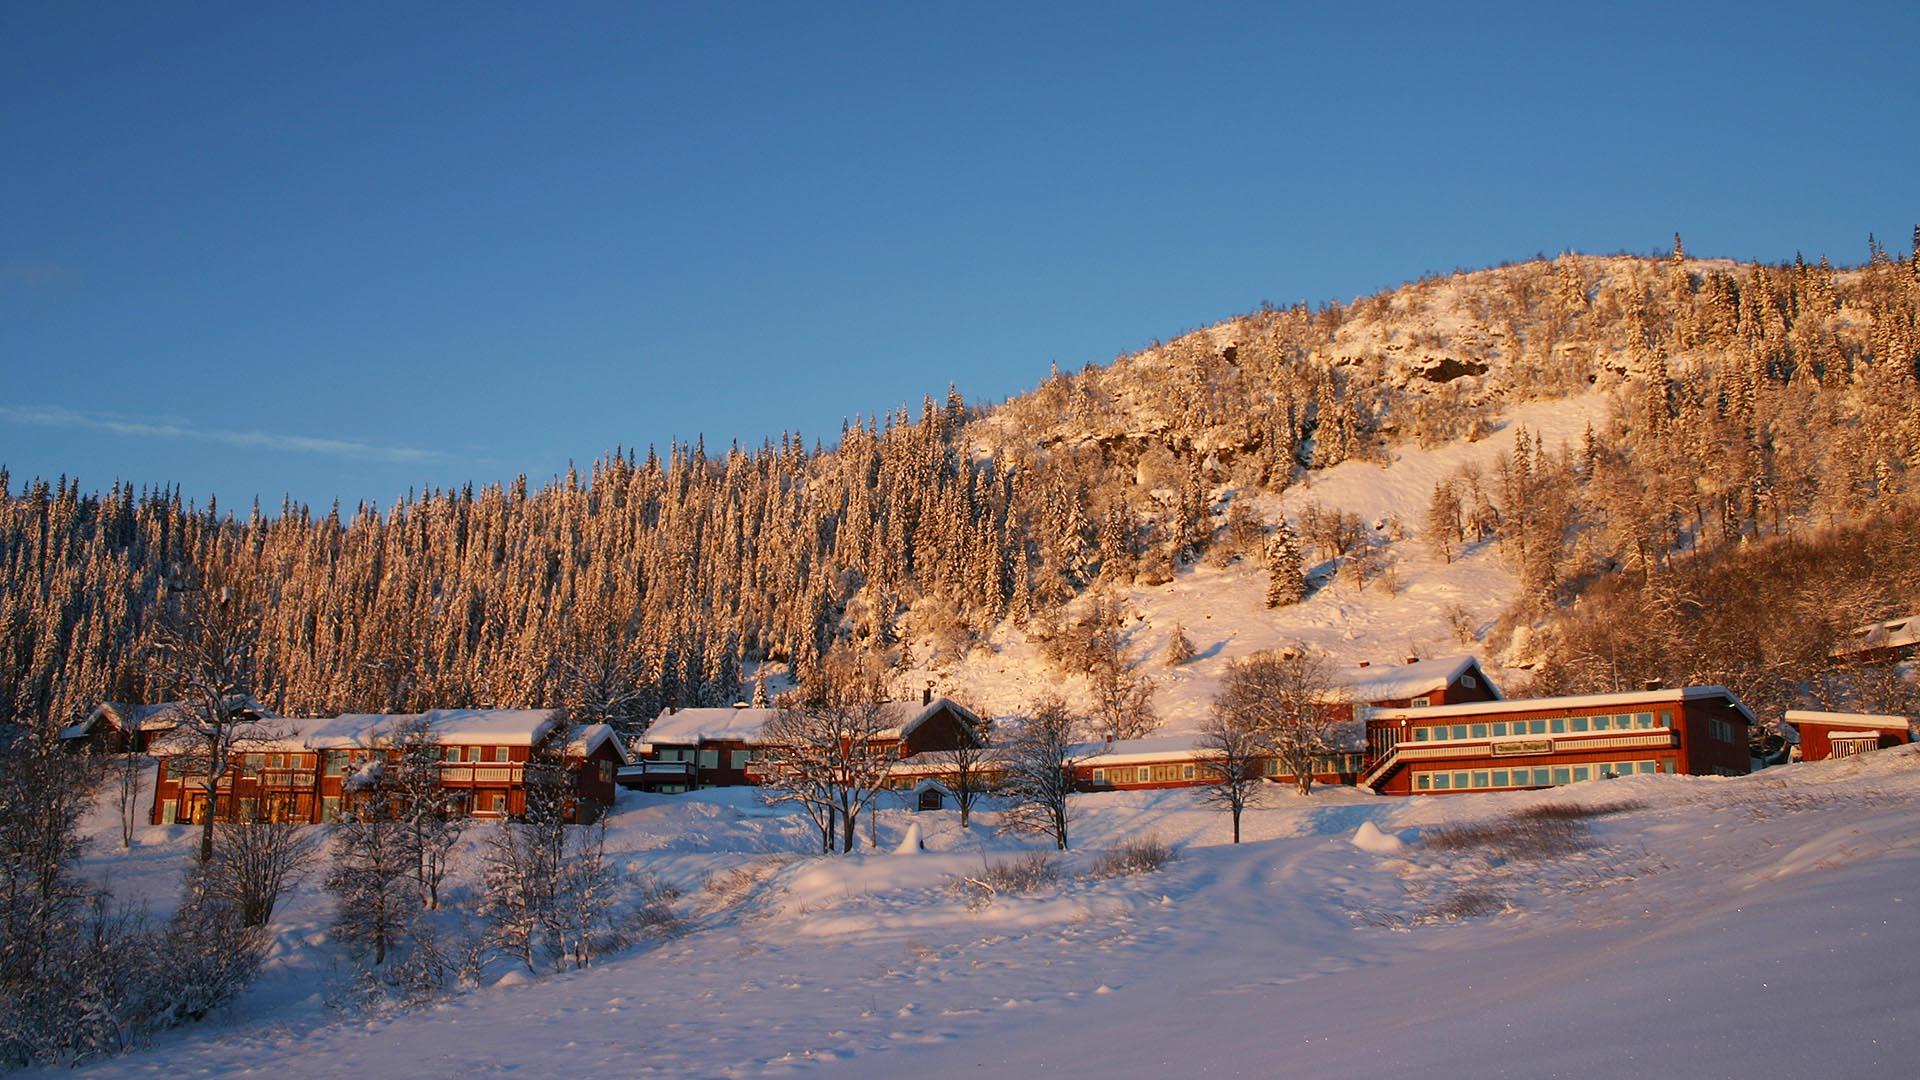 Lange, niedrige rotgemalte Holzgebäude am Fuße einer Anhöhe in offenem Gelände, umgeben von Fichtenwald in weichem Wintersonnenlicht. Es liegt Schnee, auch auf den Bäumen.